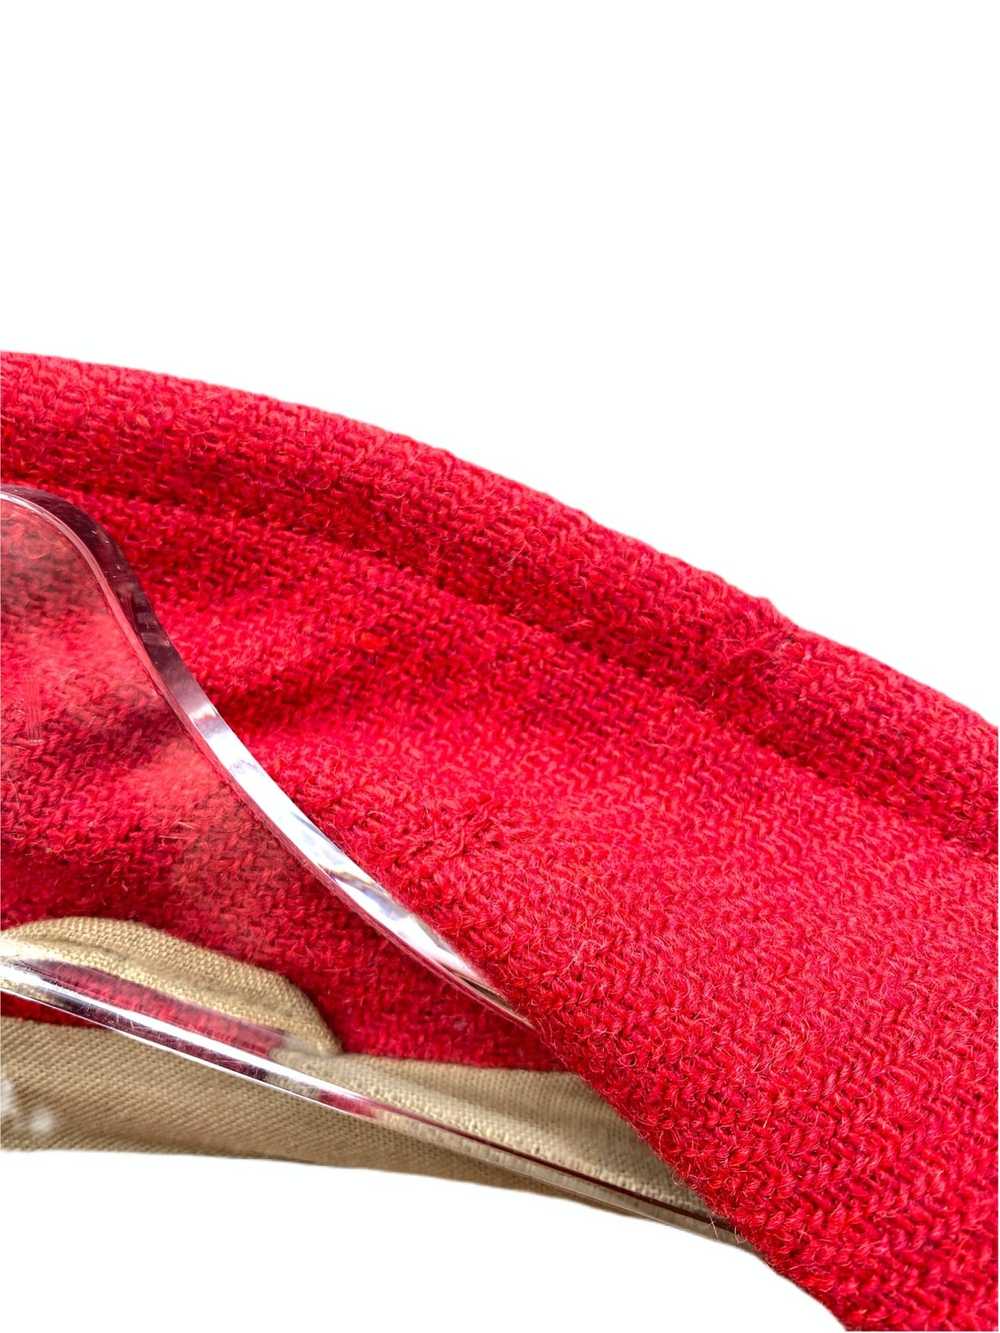 Dries Van Noten Red Wool Peacoat - image 5